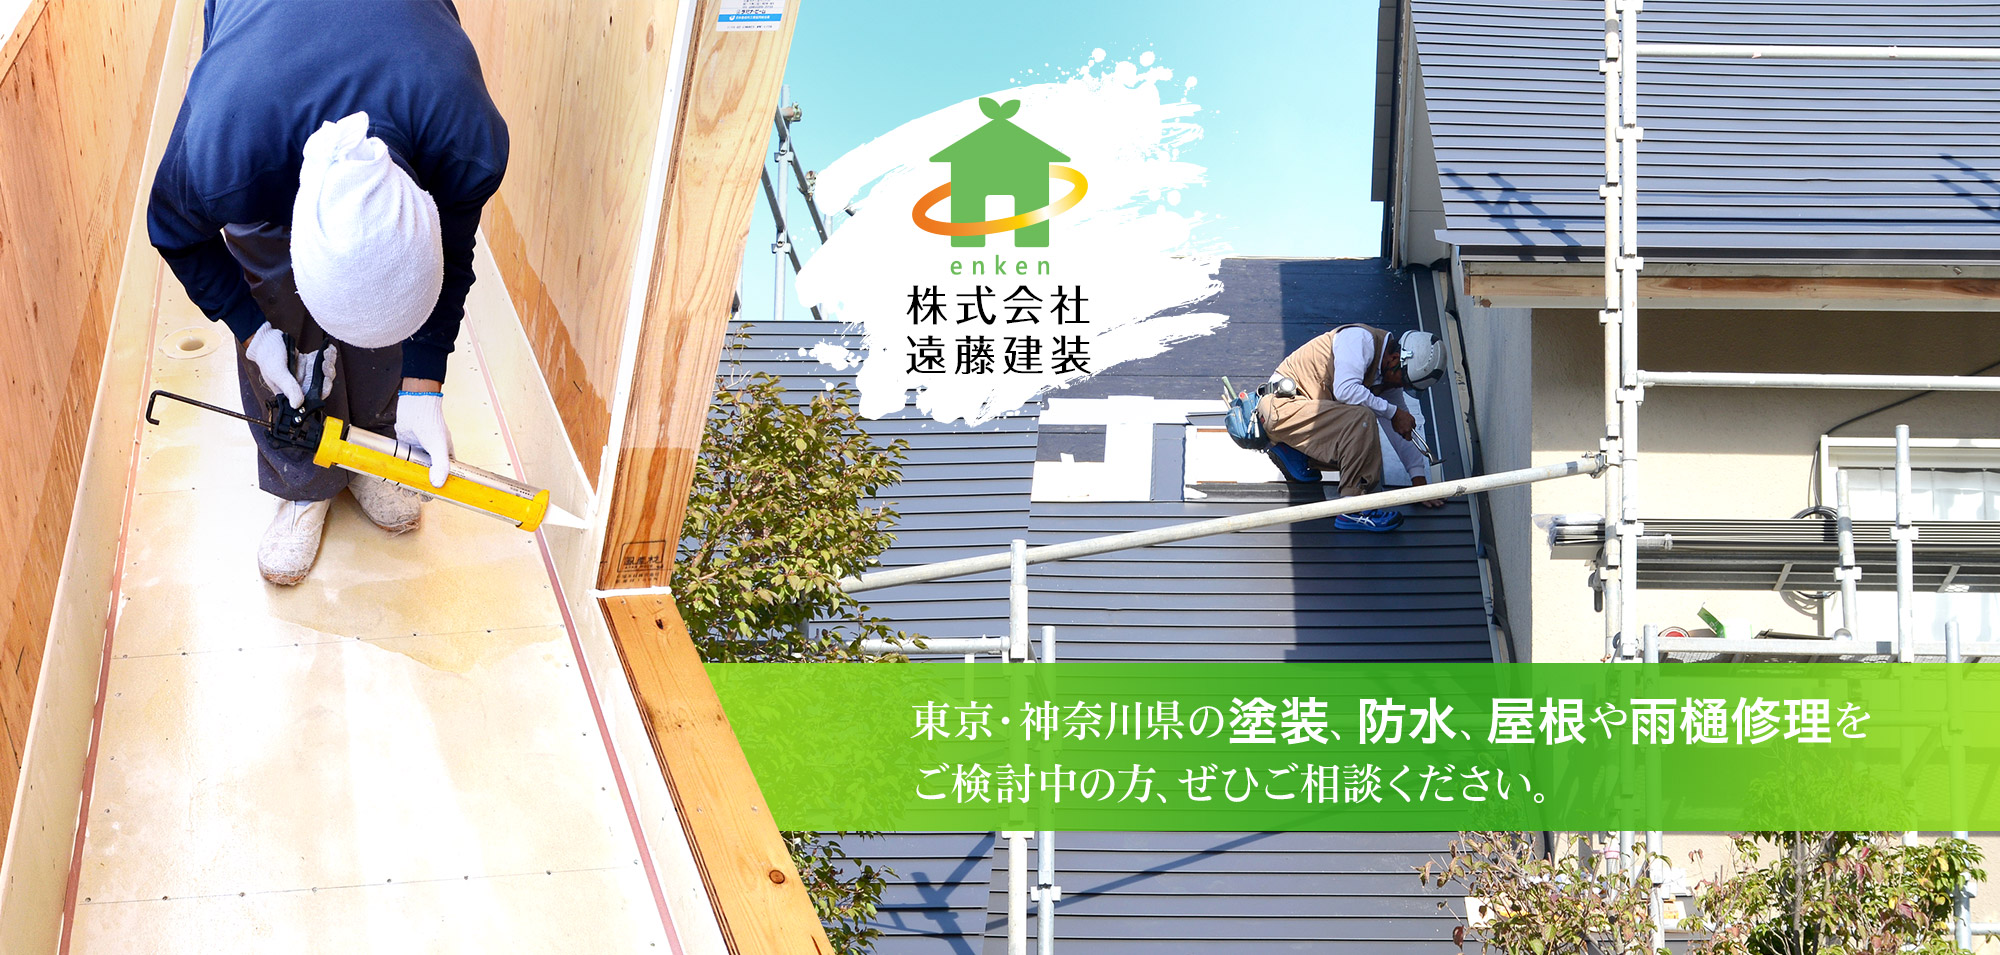 東京・神奈川県の塗装、防水、屋根や雨樋修理をご検討中の方、ぜひご相談ください。